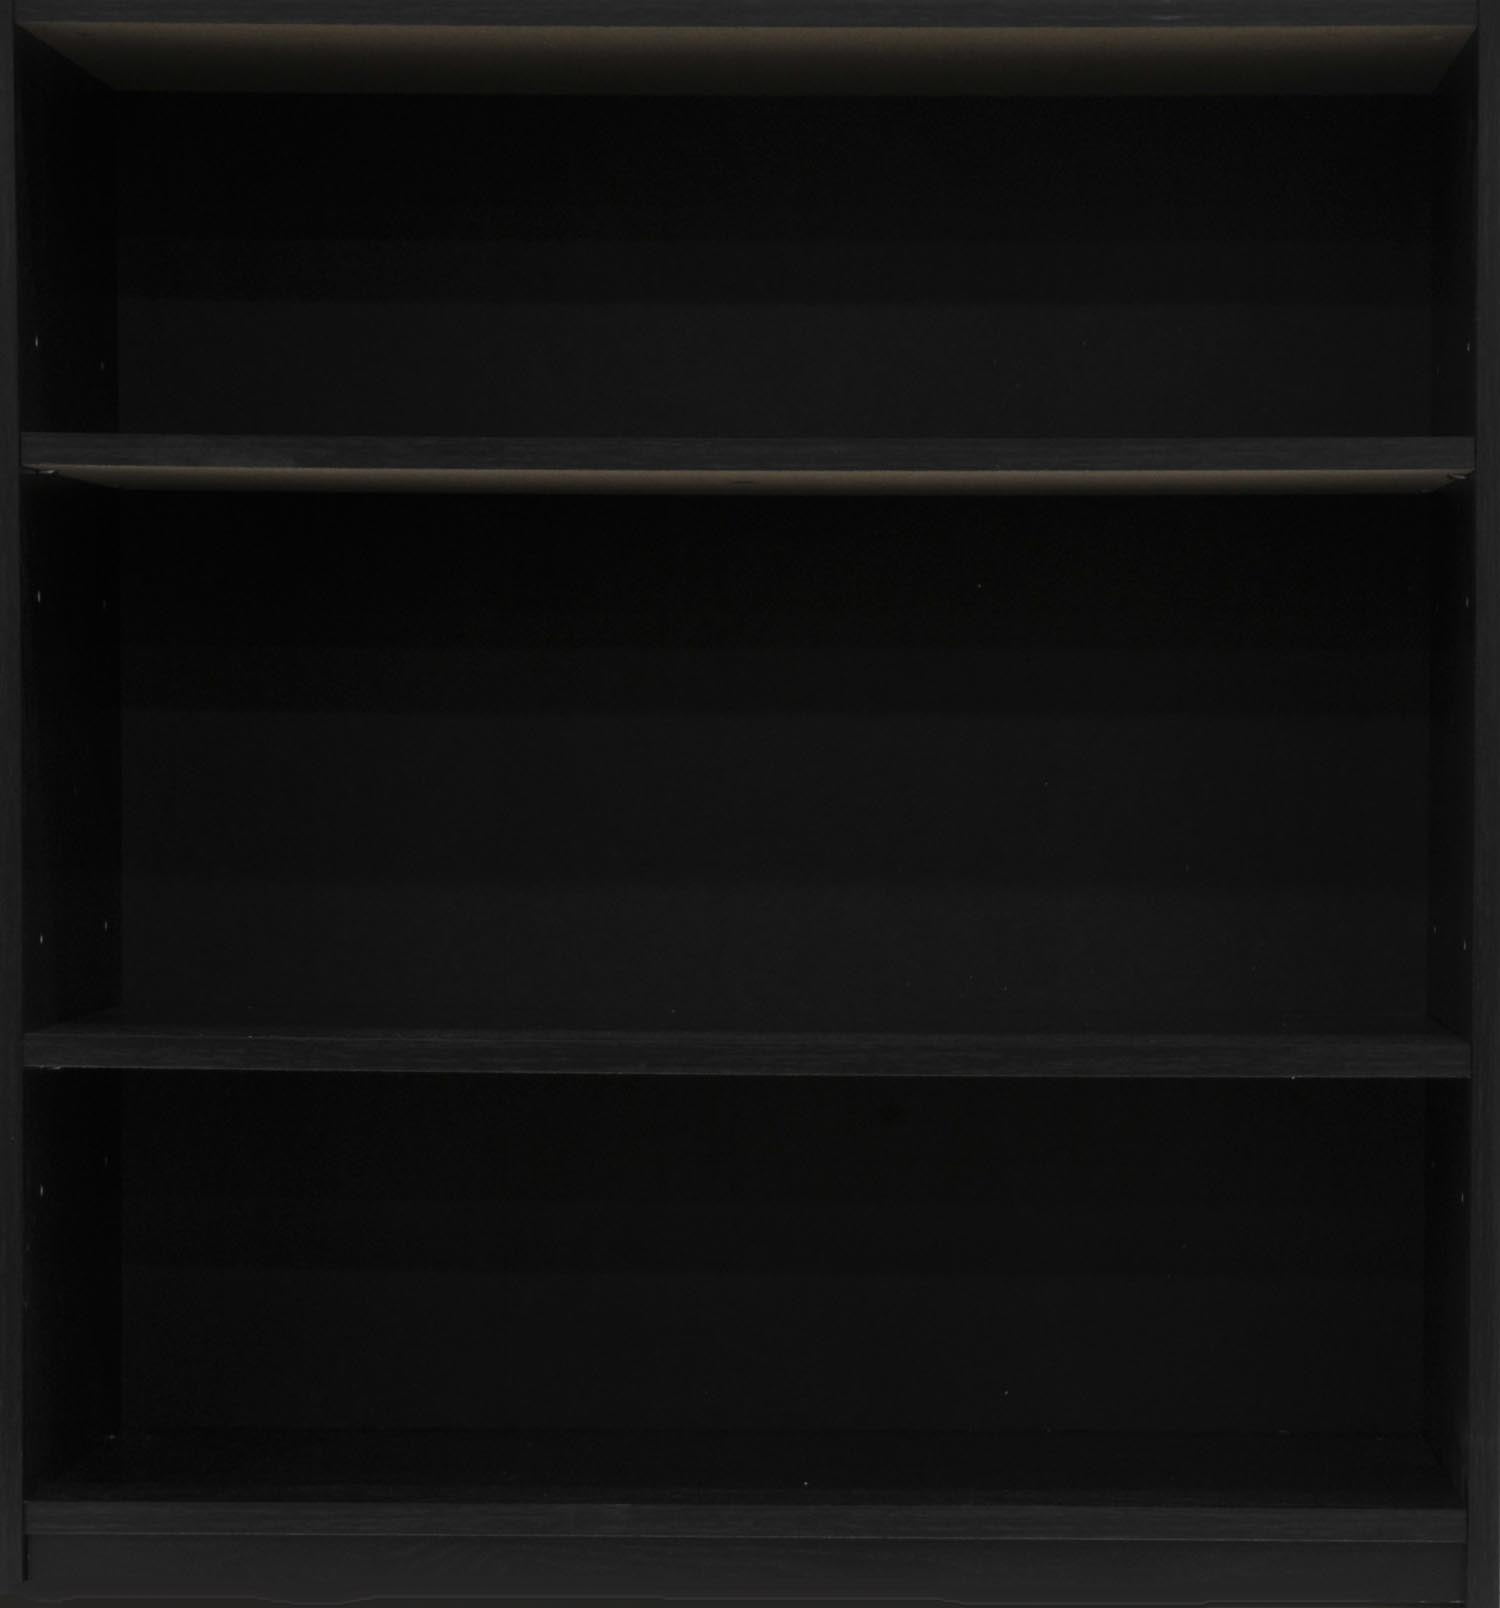 Mainstays 3 Shelf Black Bookcase Walmart Com Walmart Com